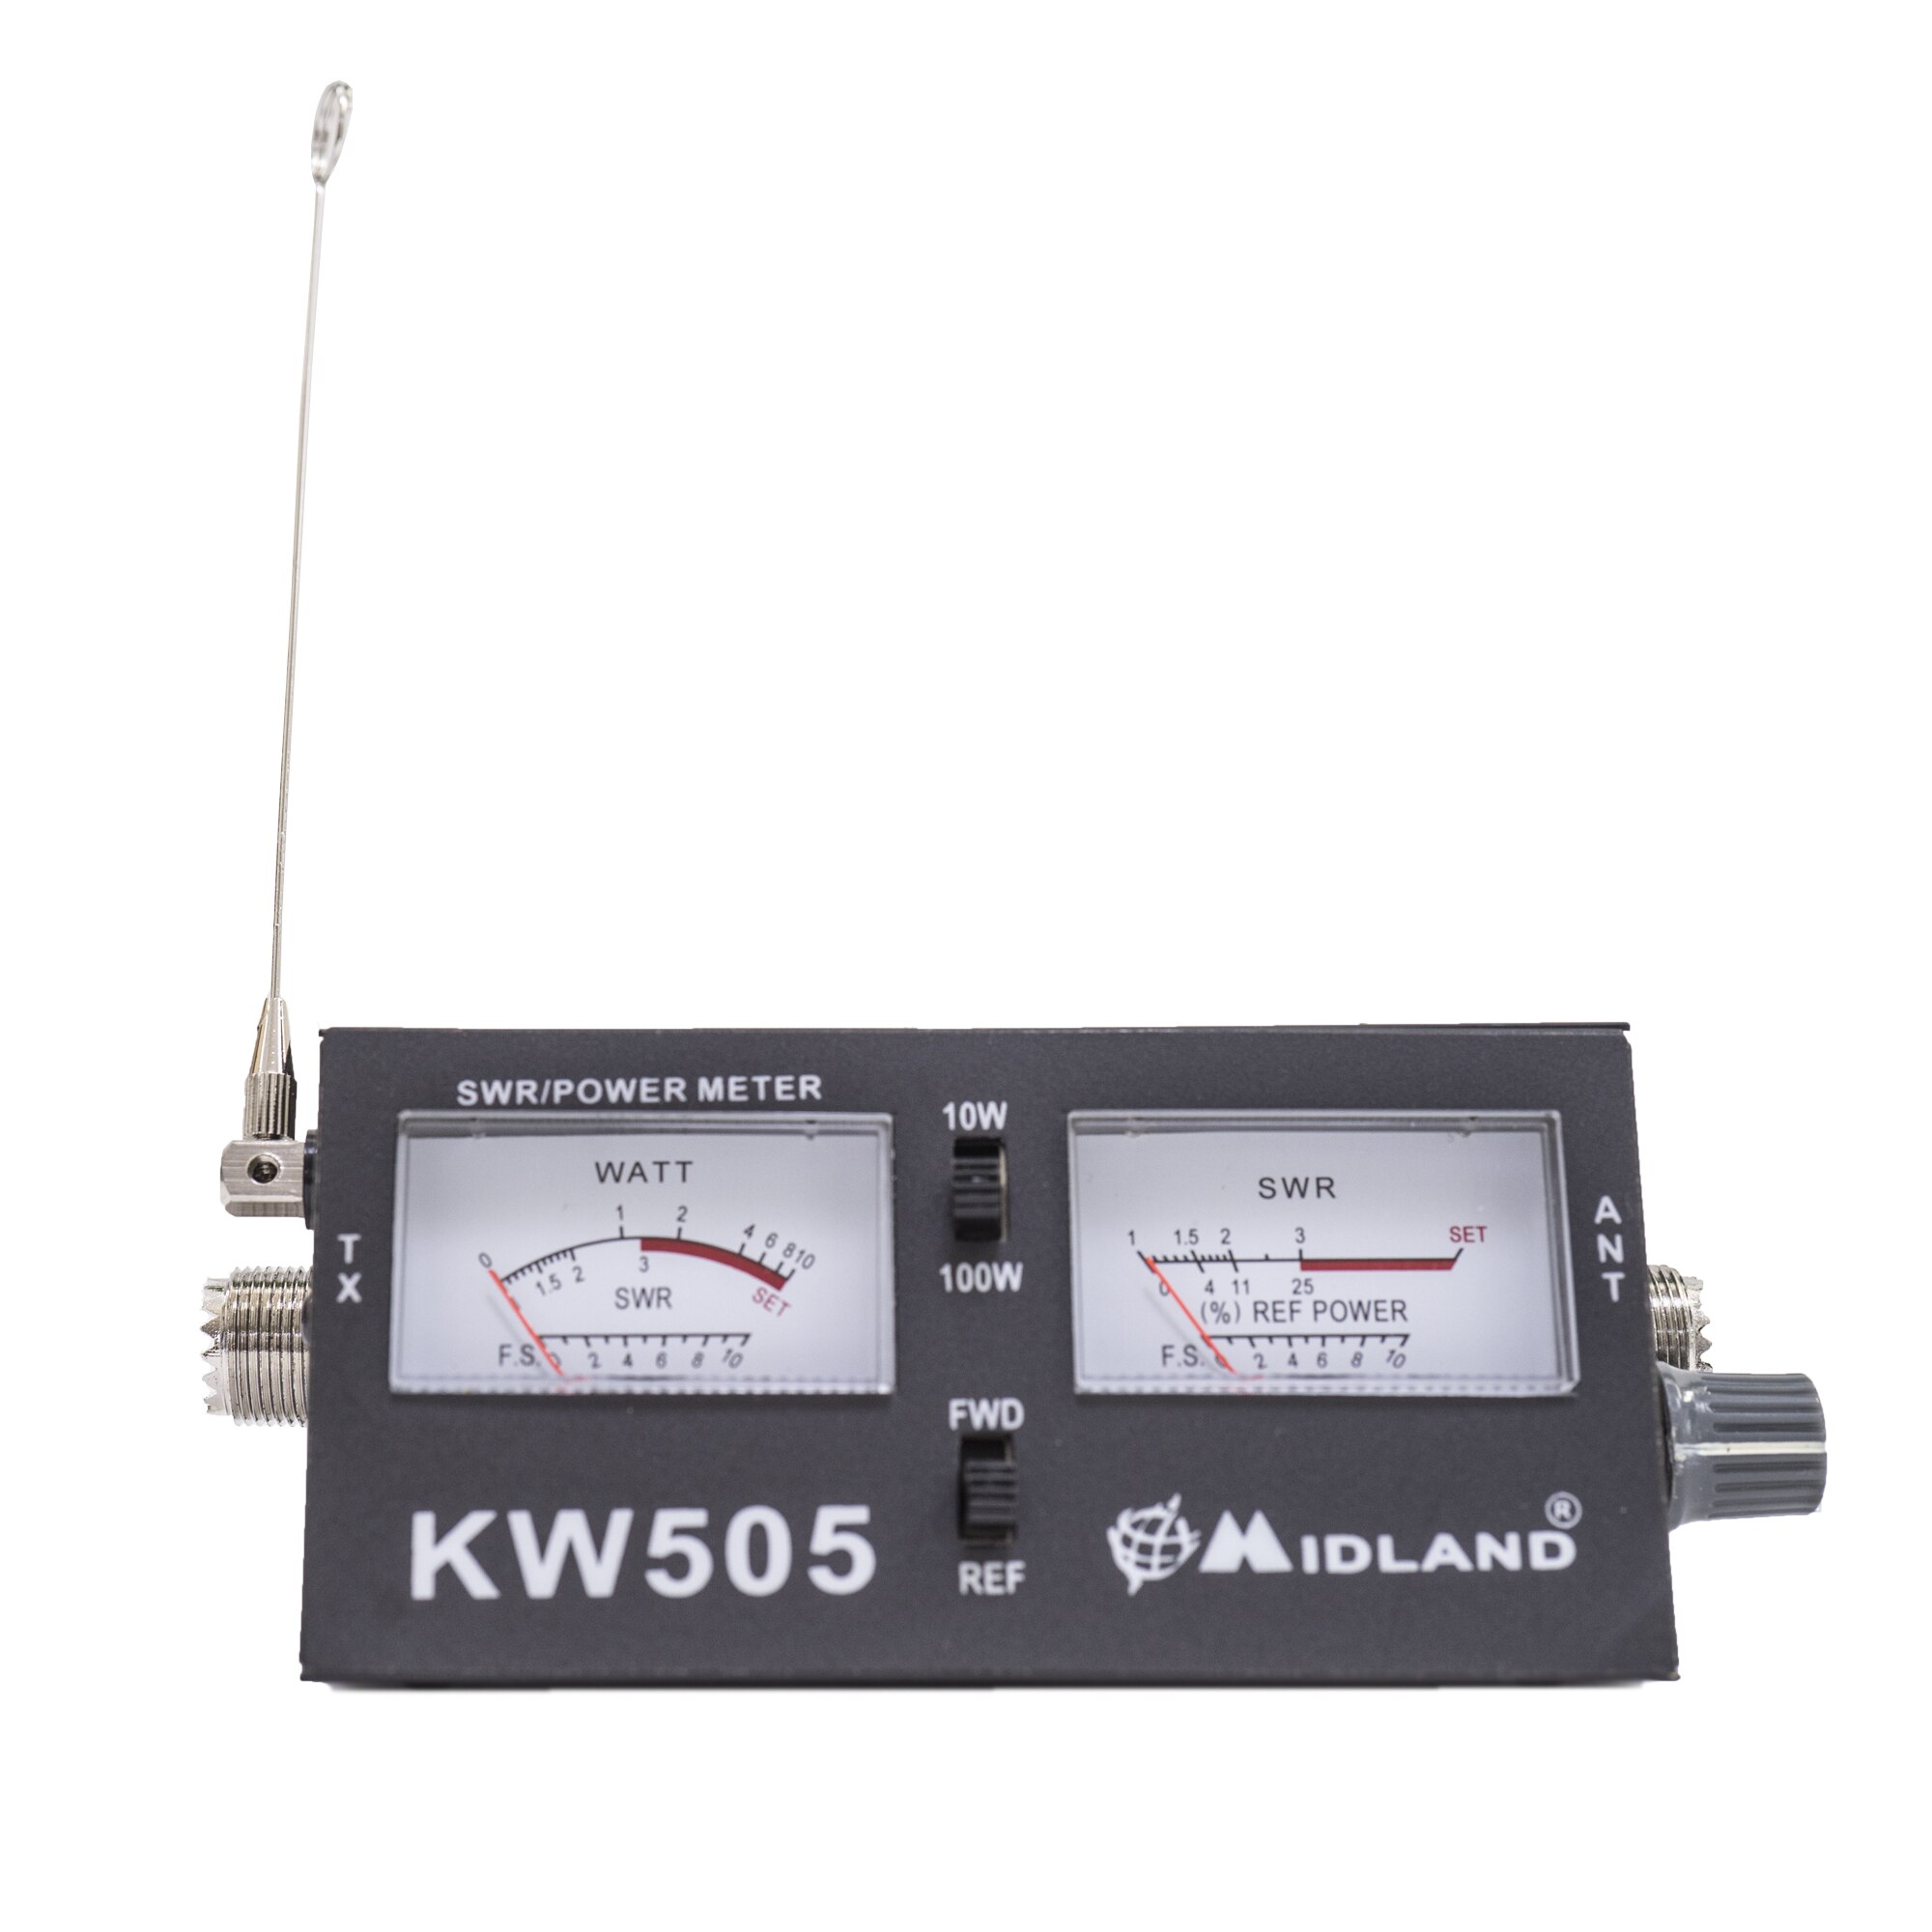 Bold Wafer Adaptation Reflectometru Midland KW505, PWR-SWR Meter, 10W-100W, 1.5-150MHz - eMAG.ro